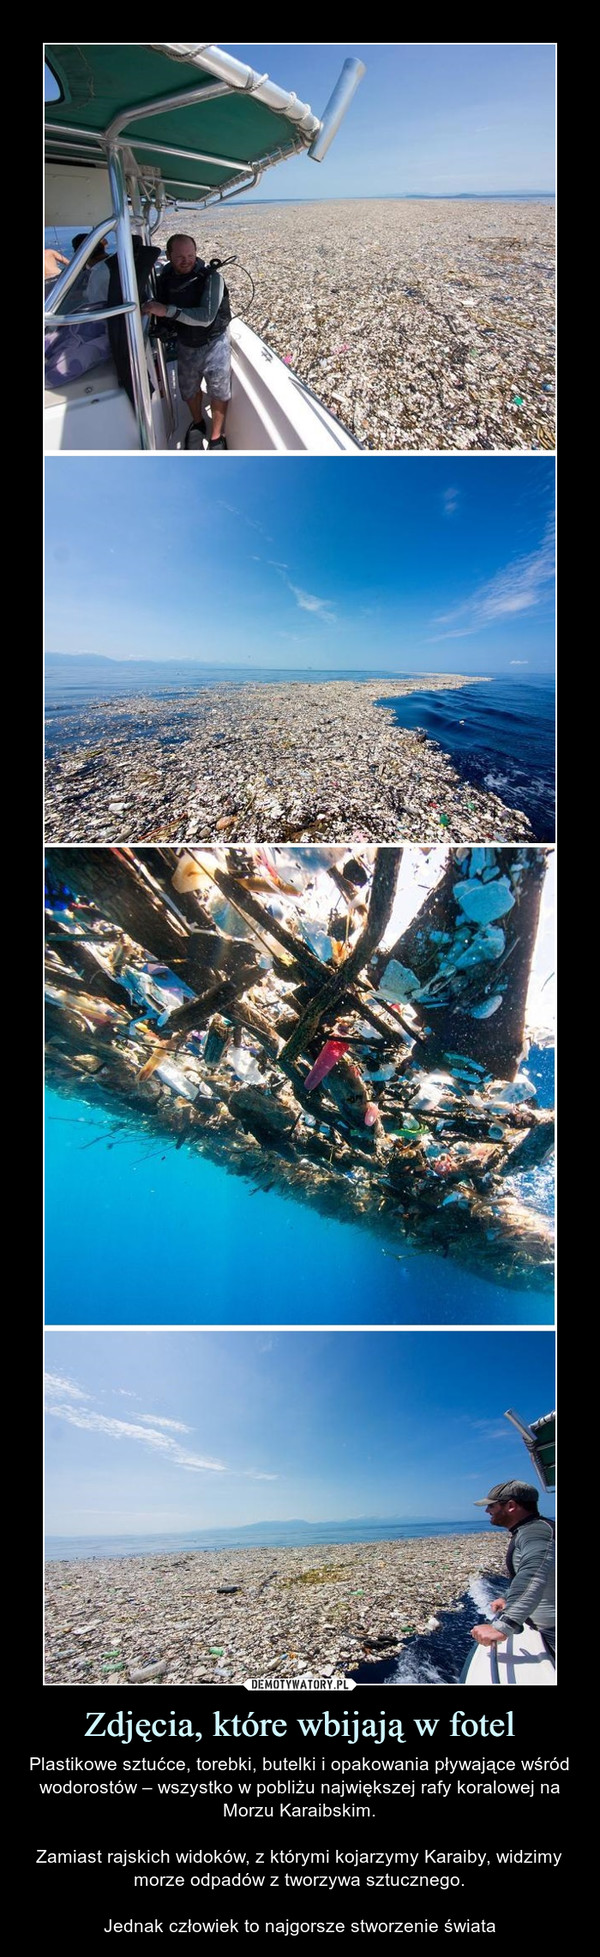 Zdjęcia, które wbijają w fotel – Plastikowe sztućce, torebki, butelki i opakowania pływające wśród wodorostów – wszystko w pobliżu największej rafy koralowej na Morzu Karaibskim.Zamiast rajskich widoków, z którymi kojarzymy Karaiby, widzimy morze odpadów z tworzywa sztucznego.Jednak człowiek to najgorsze stworzenie świata 